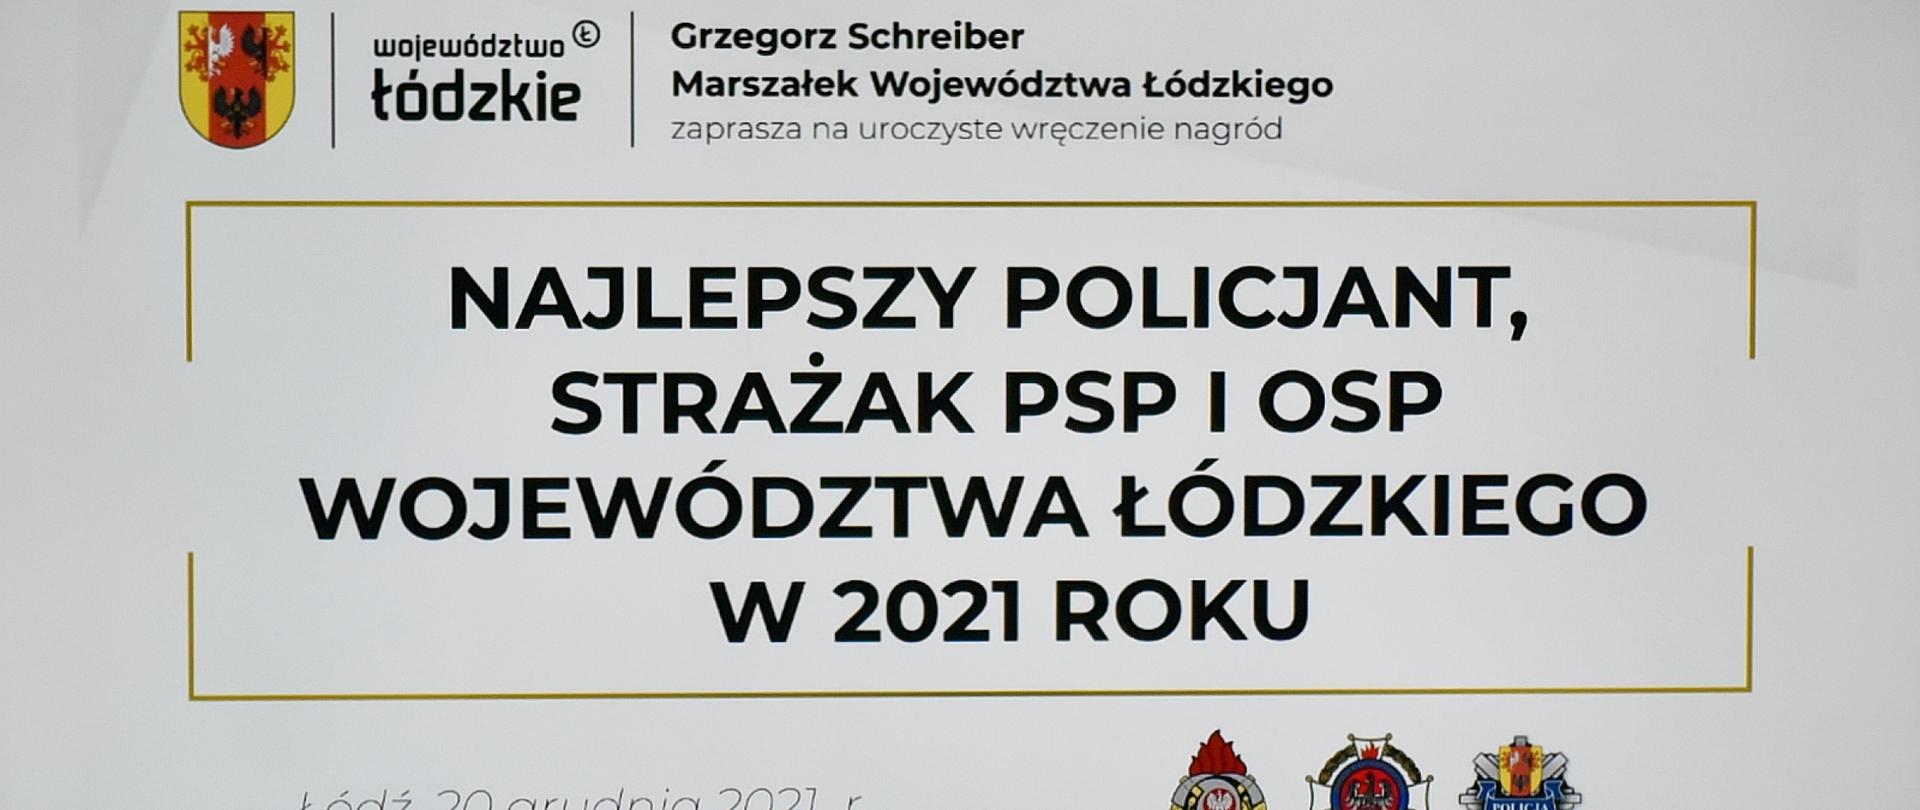 napis Województwa łódzkie, Grzegorz Schreiber Marszałek Województwa Łódzkiego zaprasza na uroczyste wręczenie nagród najlepszy policjant, strażak PSP i OSP województwa łódzkiego w 2021 roku